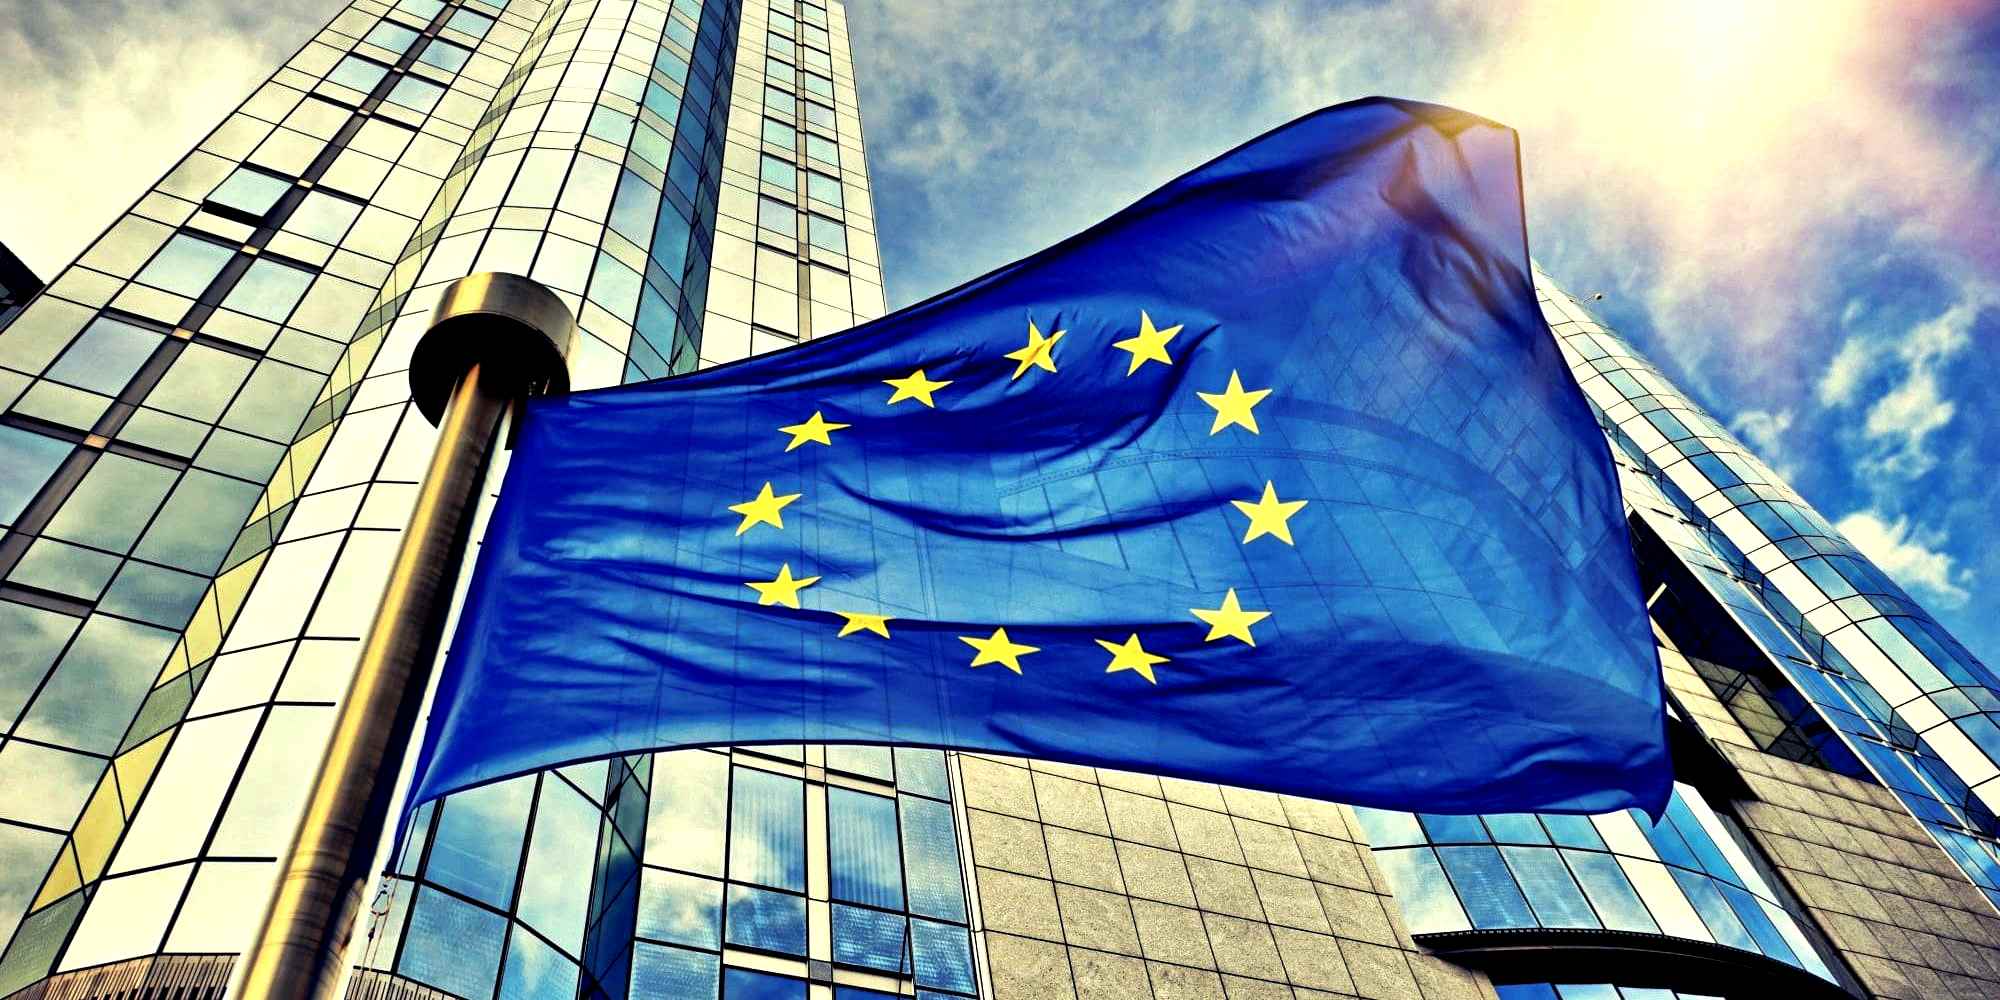 Bruxelles ridisegna l’Europa, protagonisti i cittadini. “Nuovo inizio dell’Unione”